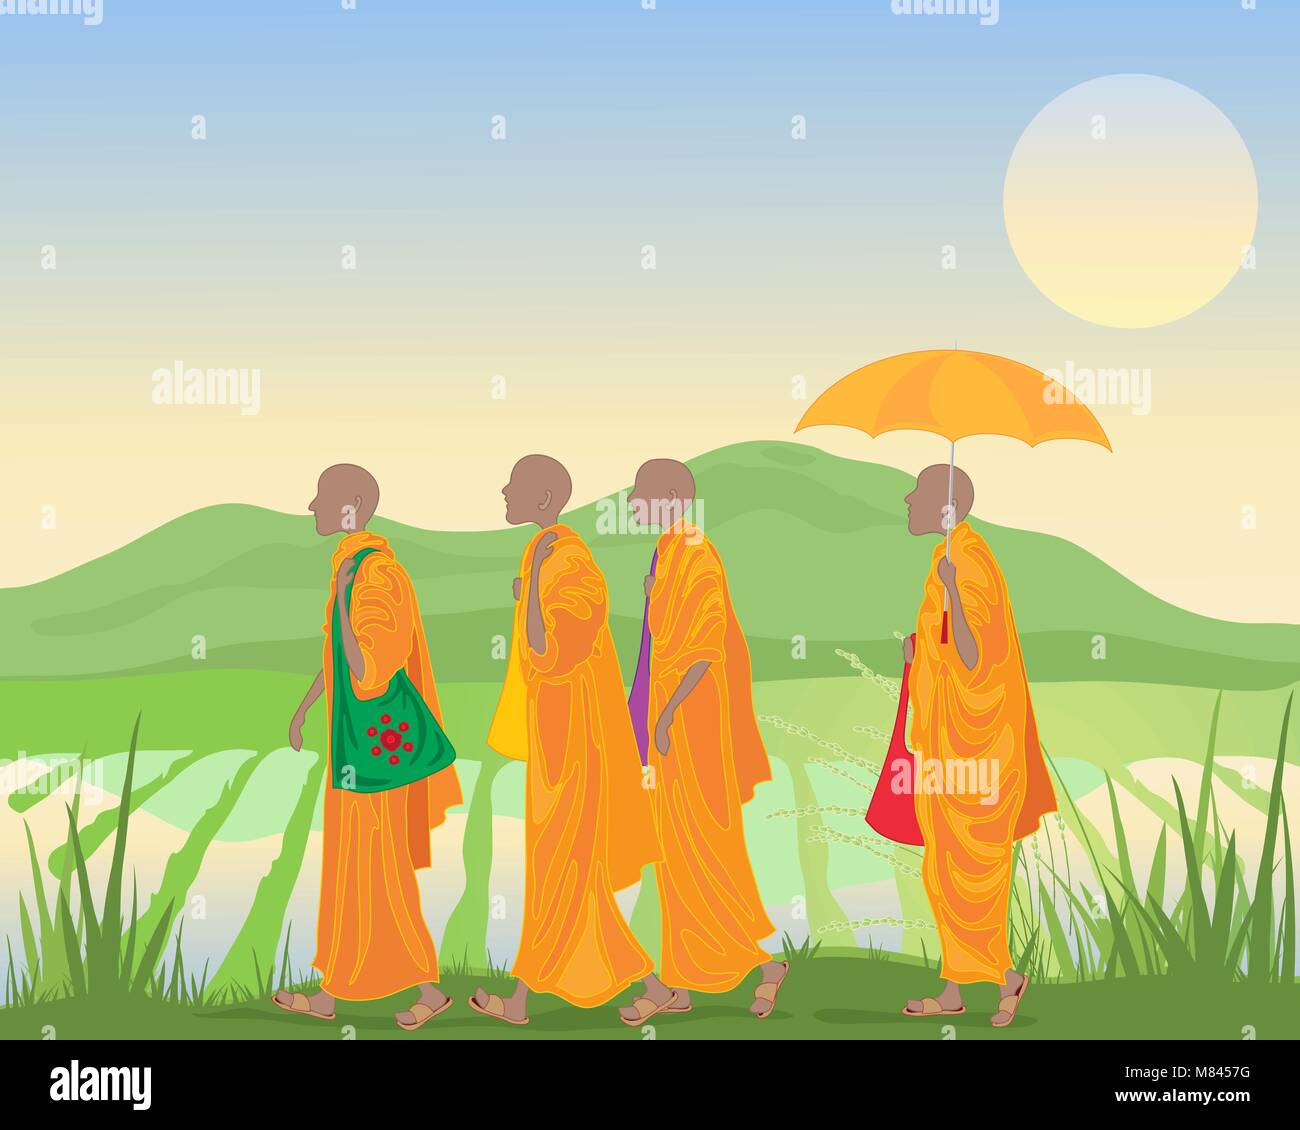 Ein Vektor Abbildung im EPS 10 Format der buddhistischen Mönche in orangefarbenen Gewändern zu Fuß von einem Reisfeld mit den Bergen in Asien Stock Vektor